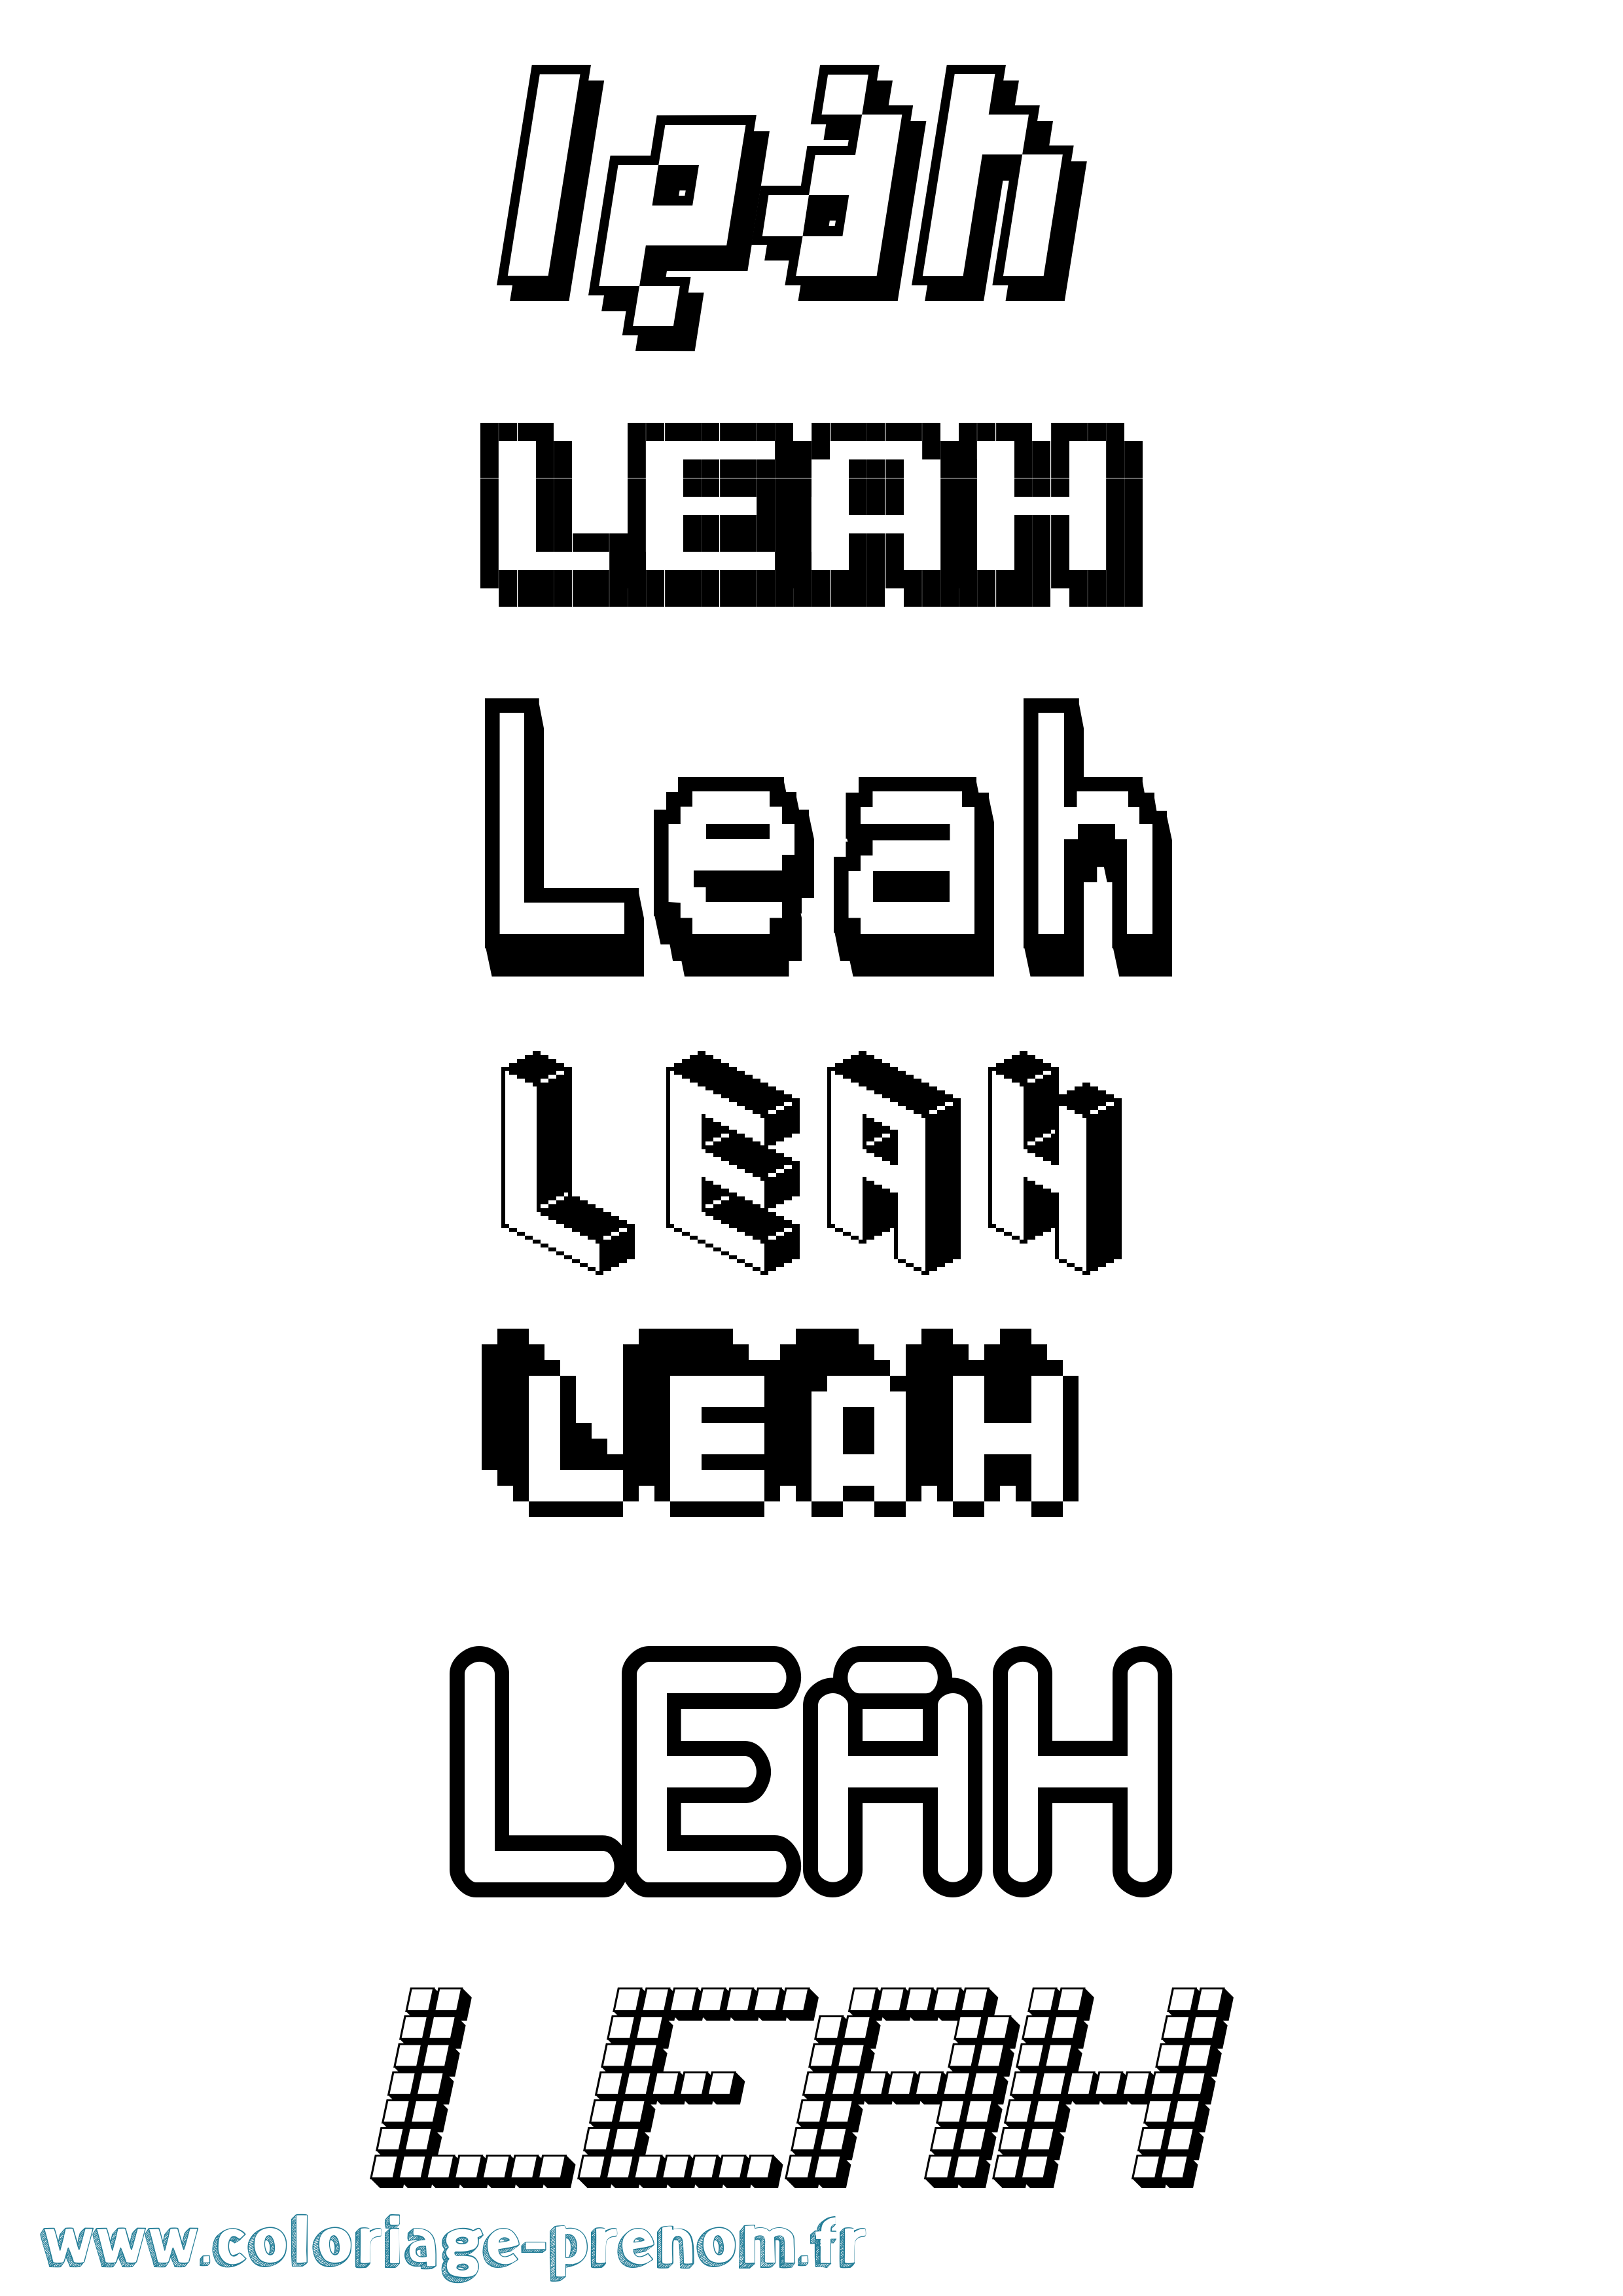 Coloriage prénom Leah Pixel